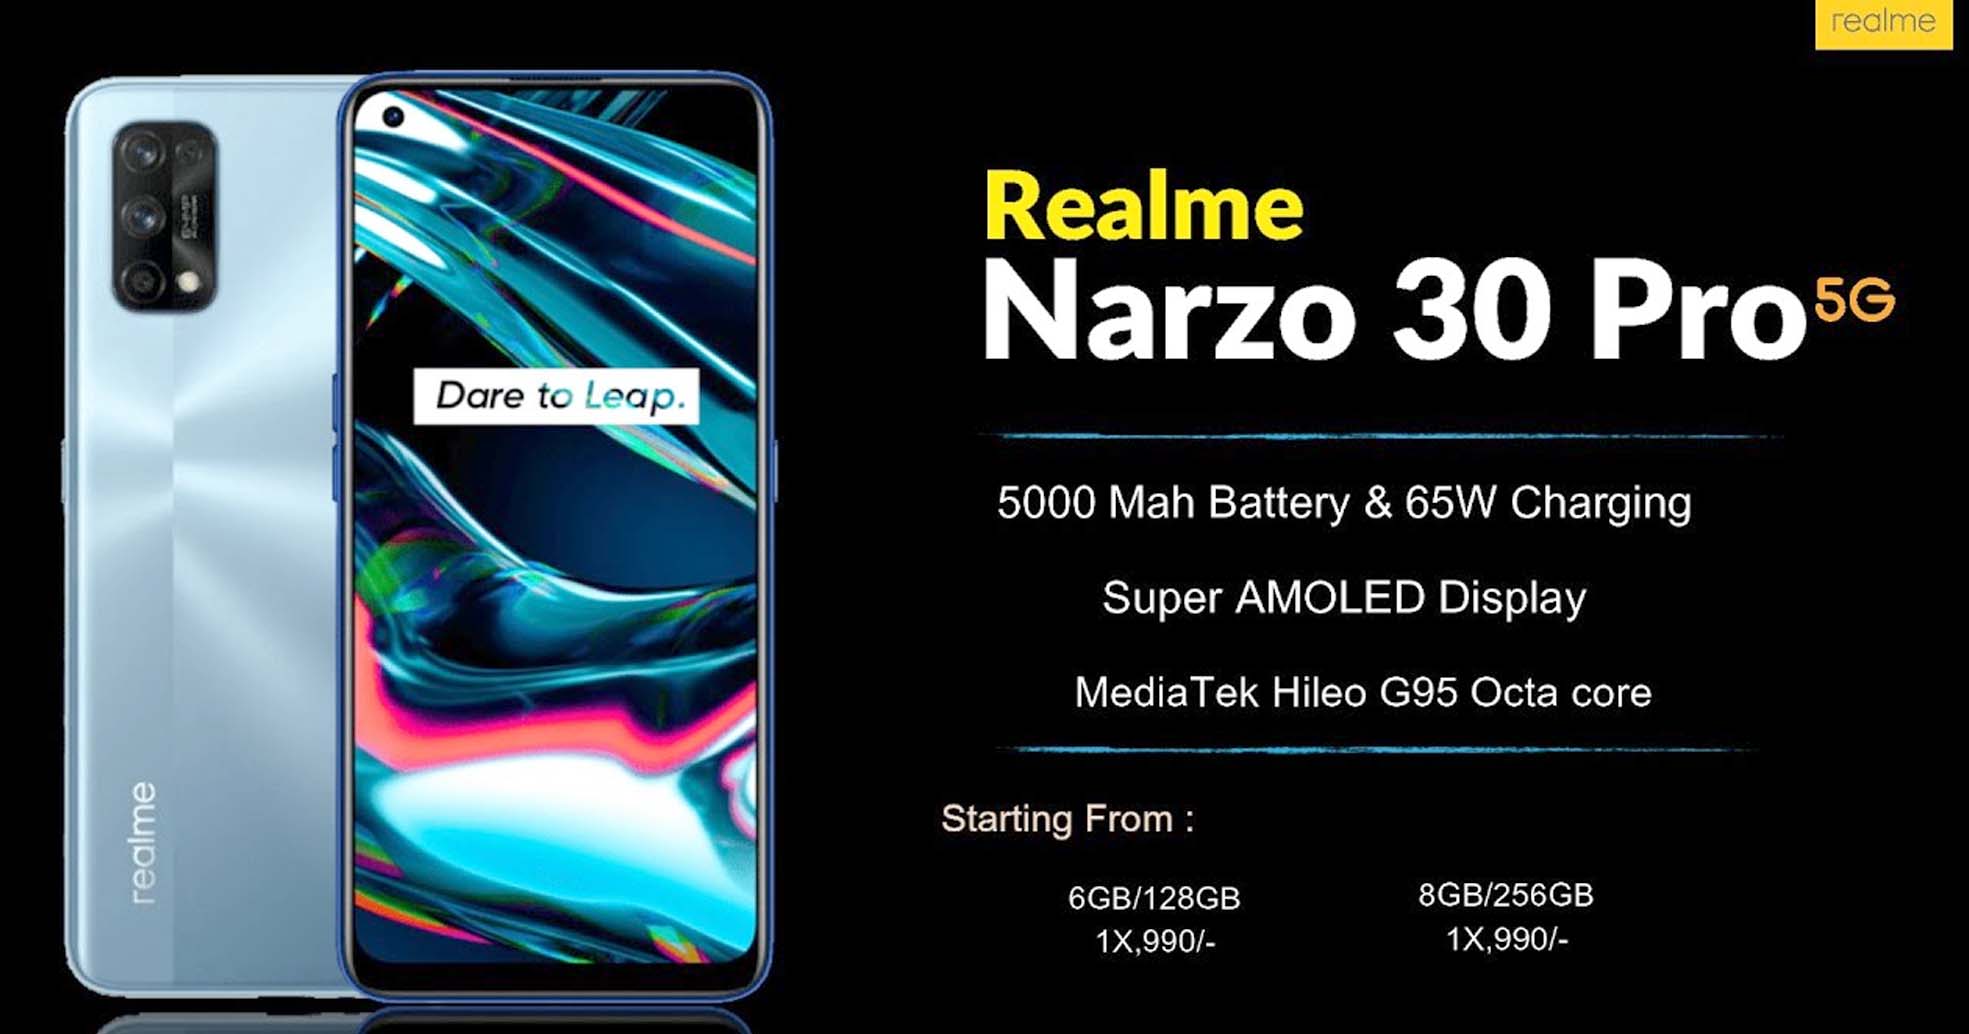 Realme Narzo 30 Pro 5G की सेल, 5100 रुपये की छूट के साथ फोन खरीदने का मौका